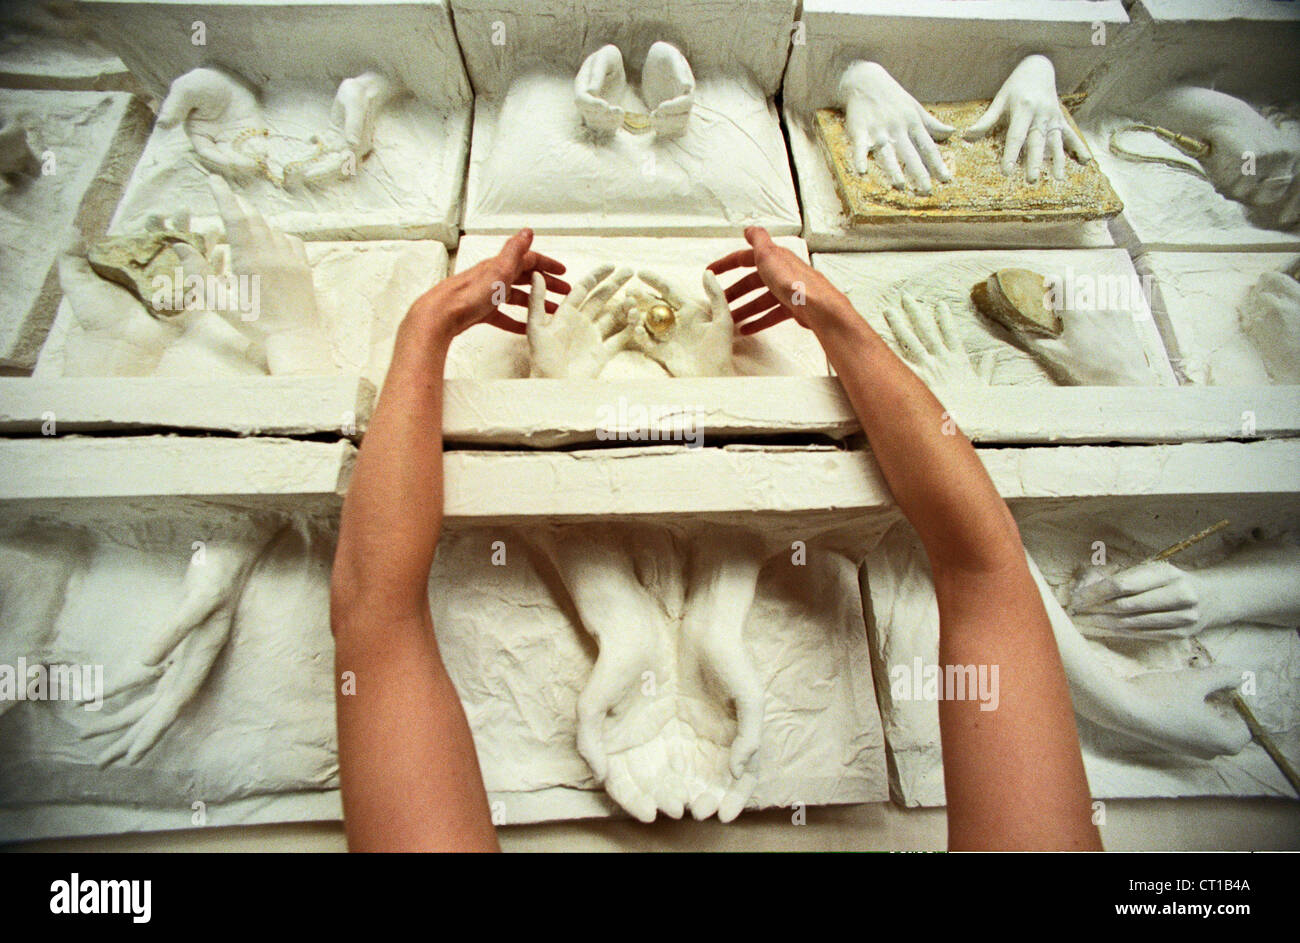 Une femme artiste organiser des moulages de plâtre womens mains symbolisant le travail des femmes dans le monde vaut son pesant d'Or Banque D'Images